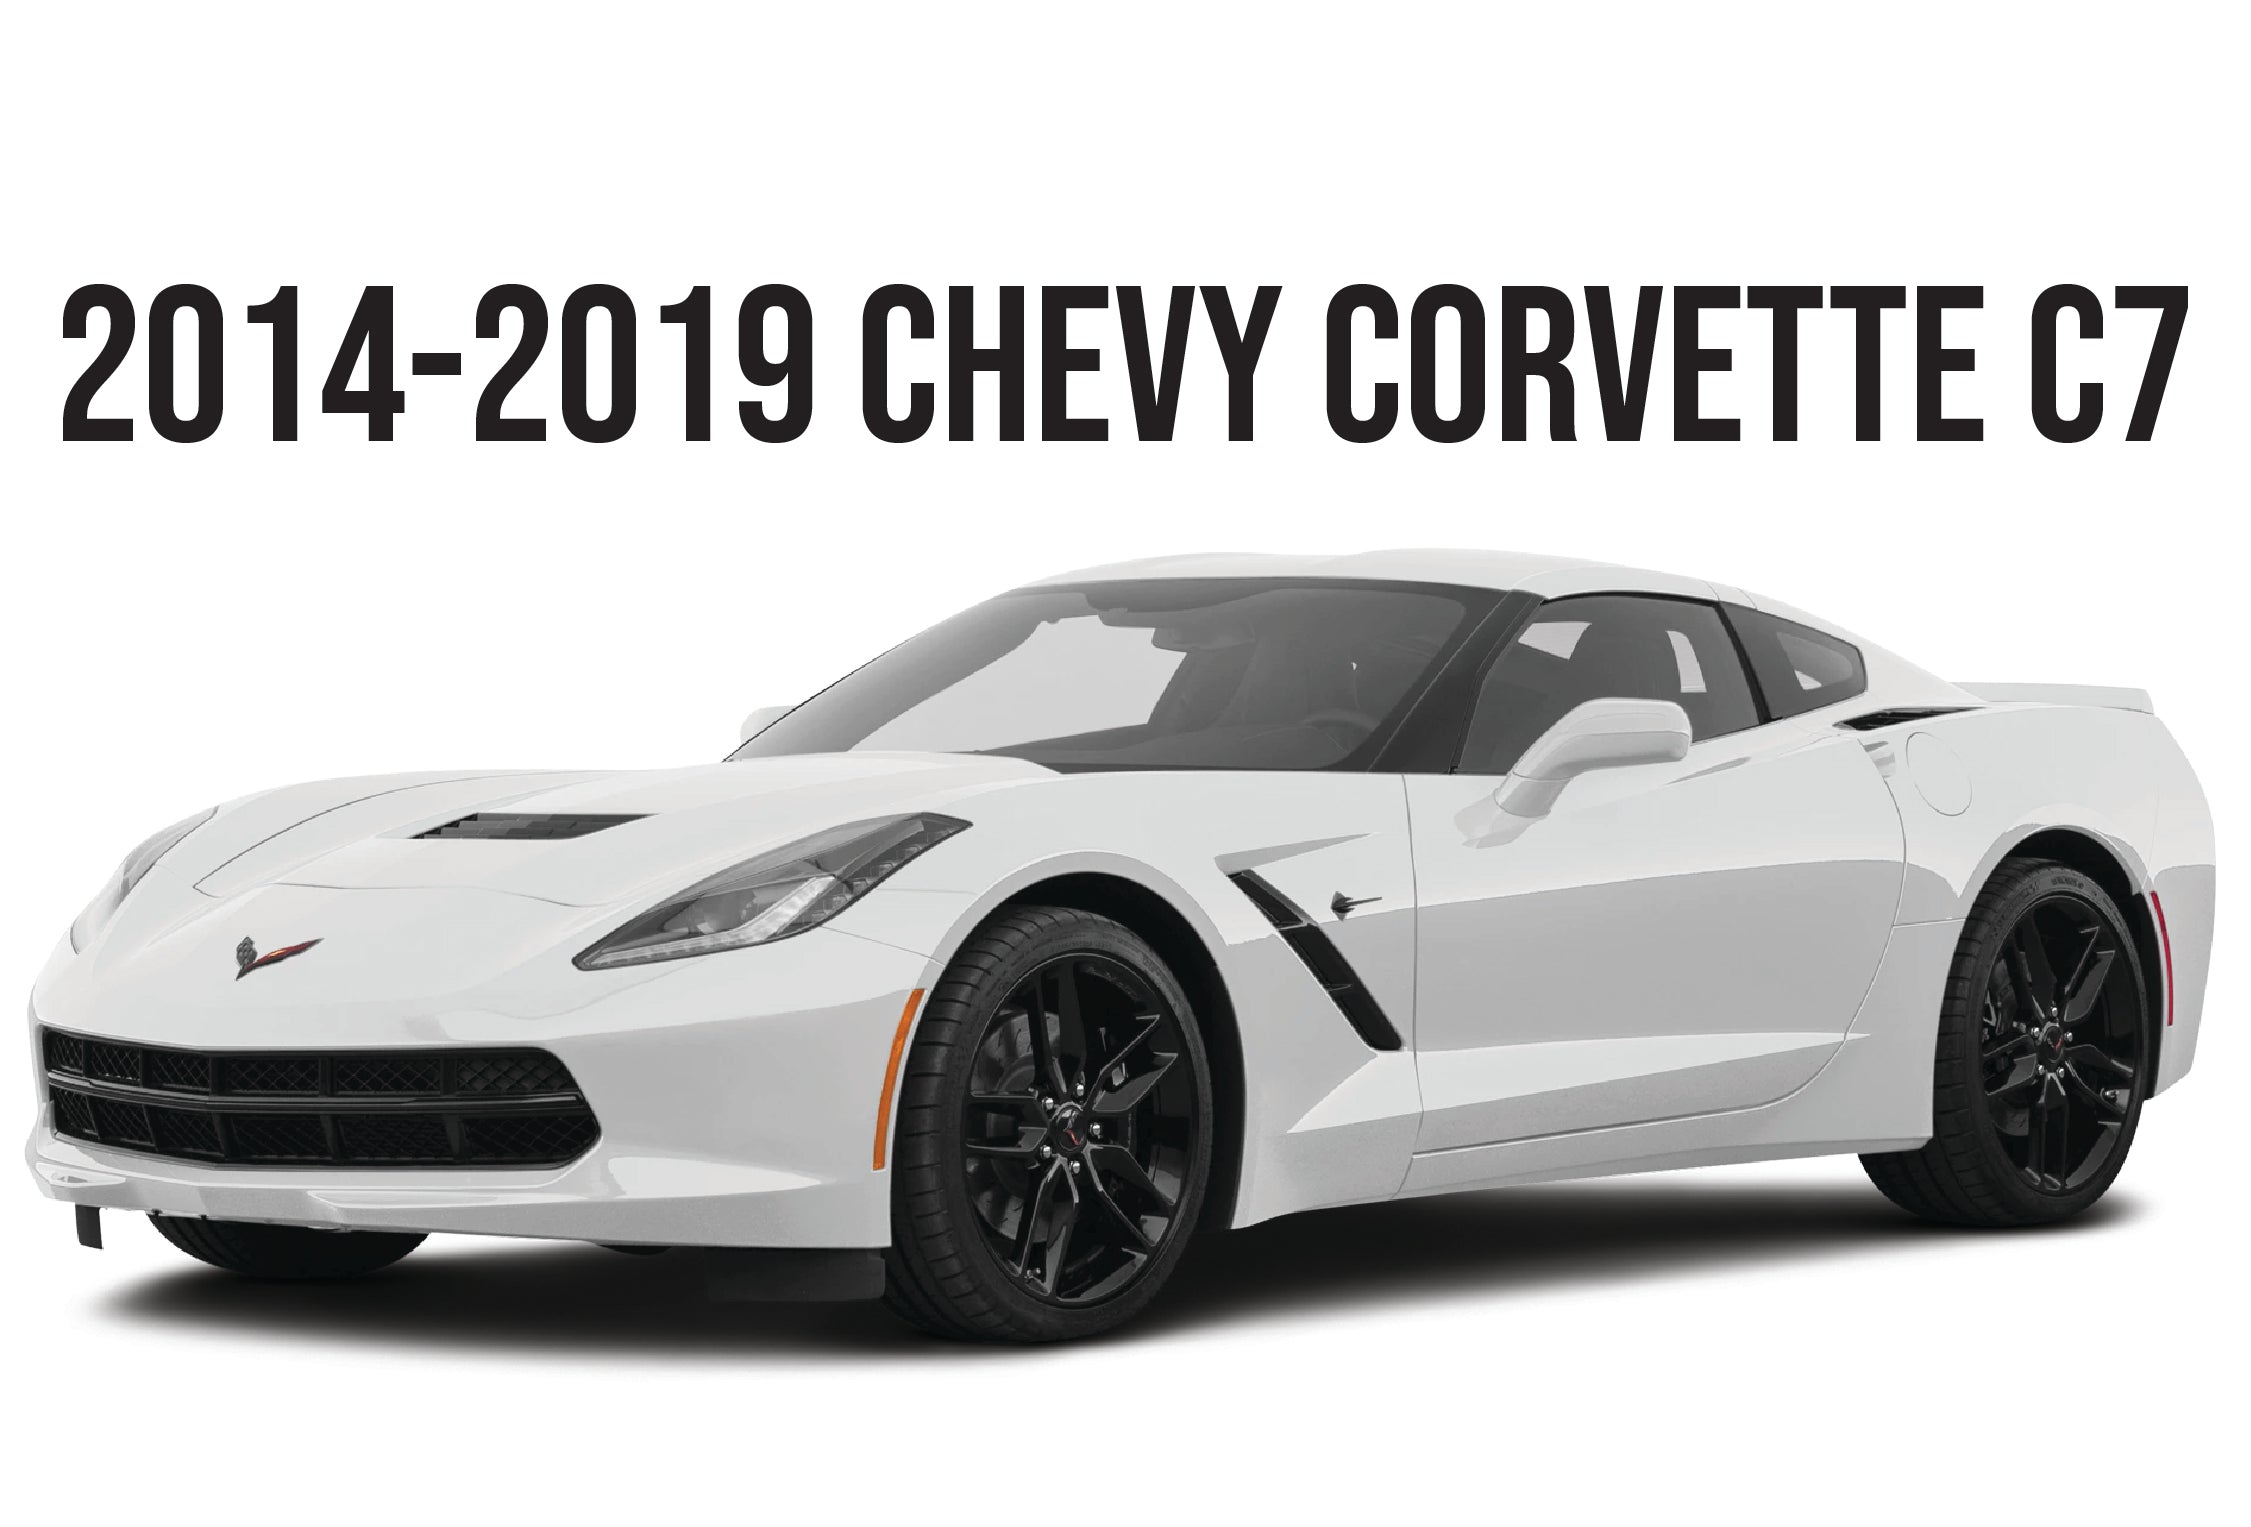 2014-2019 CHEVY CORVETTE C7